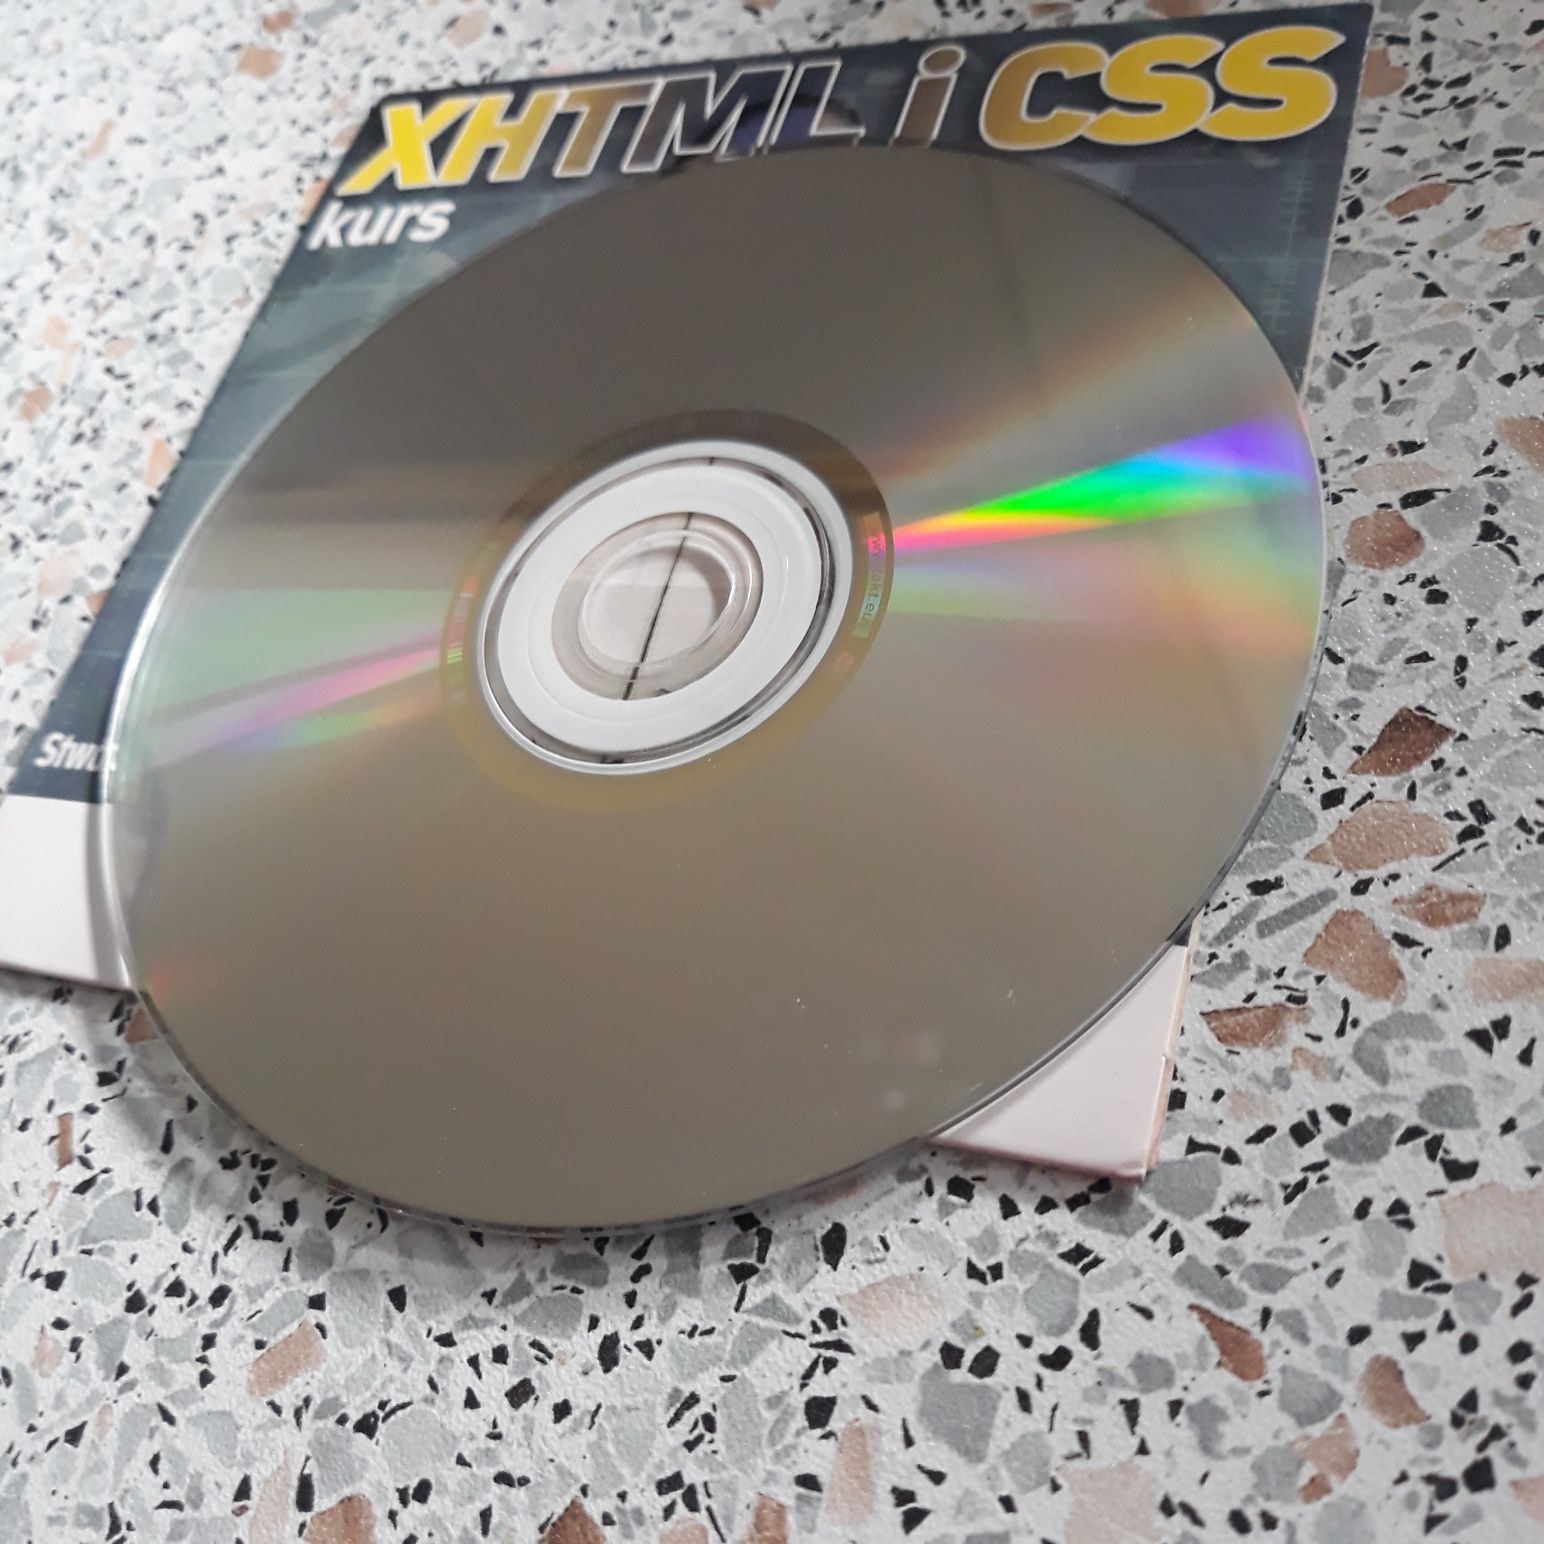 XHTML, CSS, kurs tworzenia stron internetowych, 2 x DVD, nieuzywane